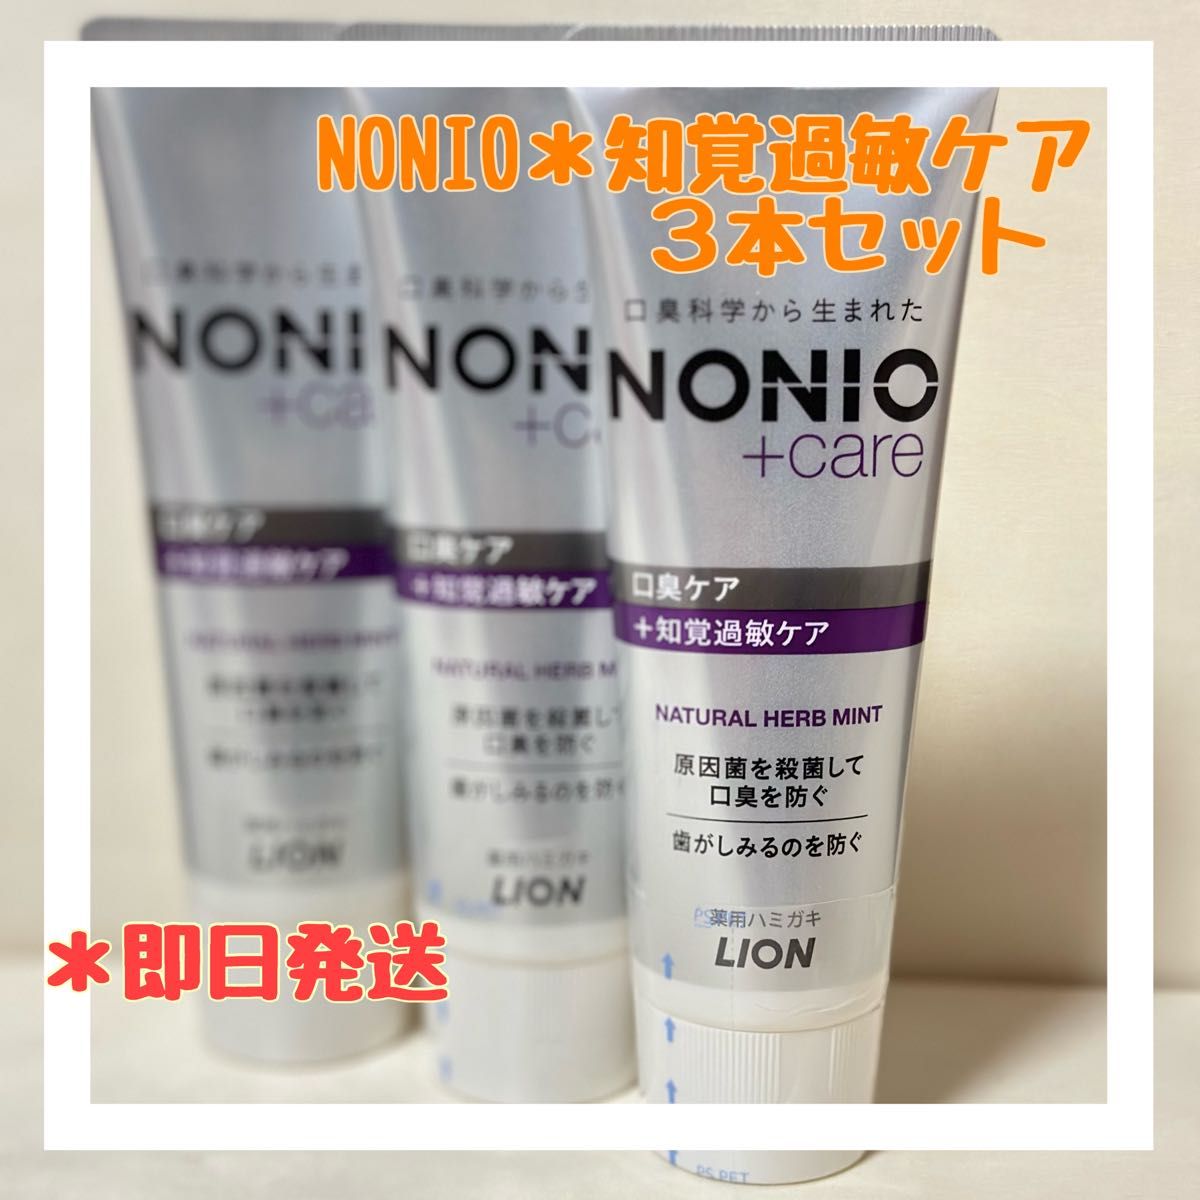 新品未使用NONIO 知覚過敏ケア 歯磨き粉 3本セット